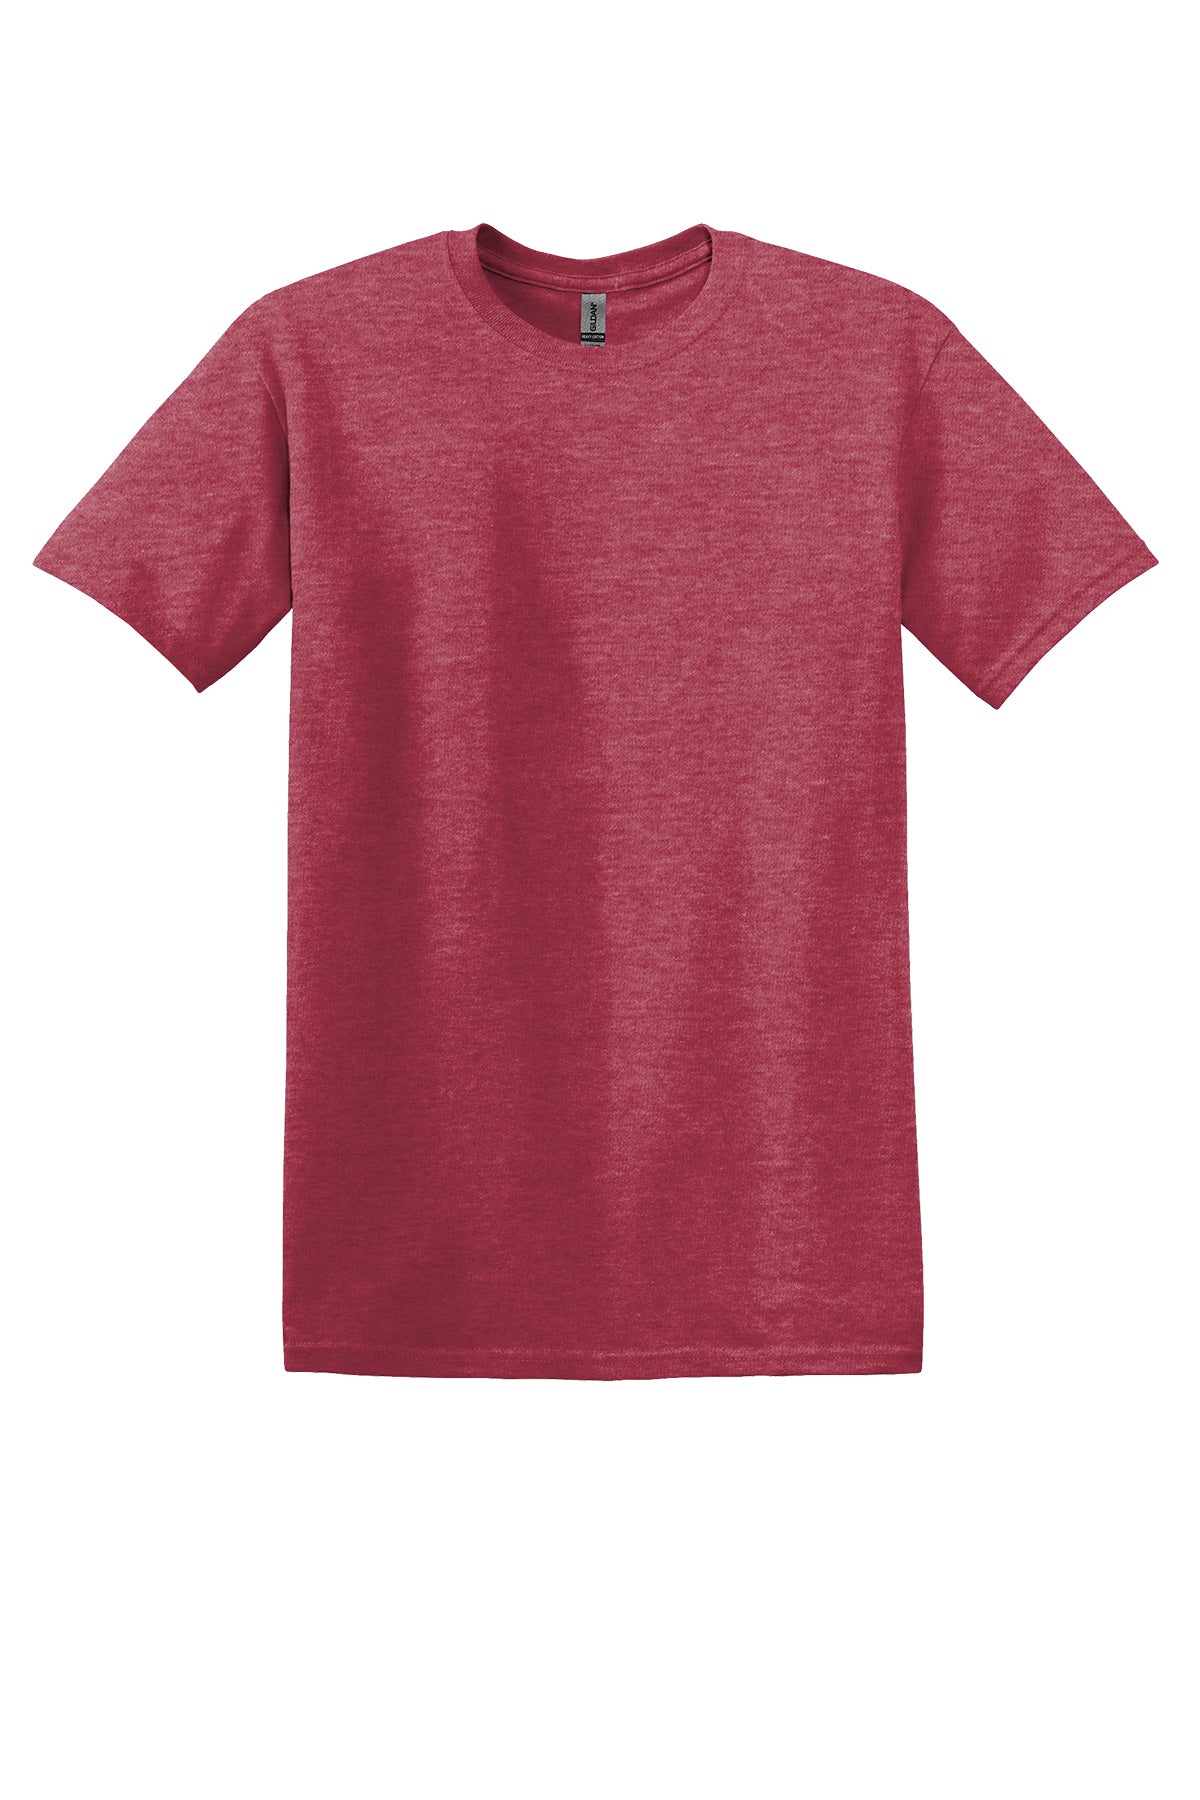 Gildan 64000 Adult T-Shirt Ad Small / Heather Cardinal